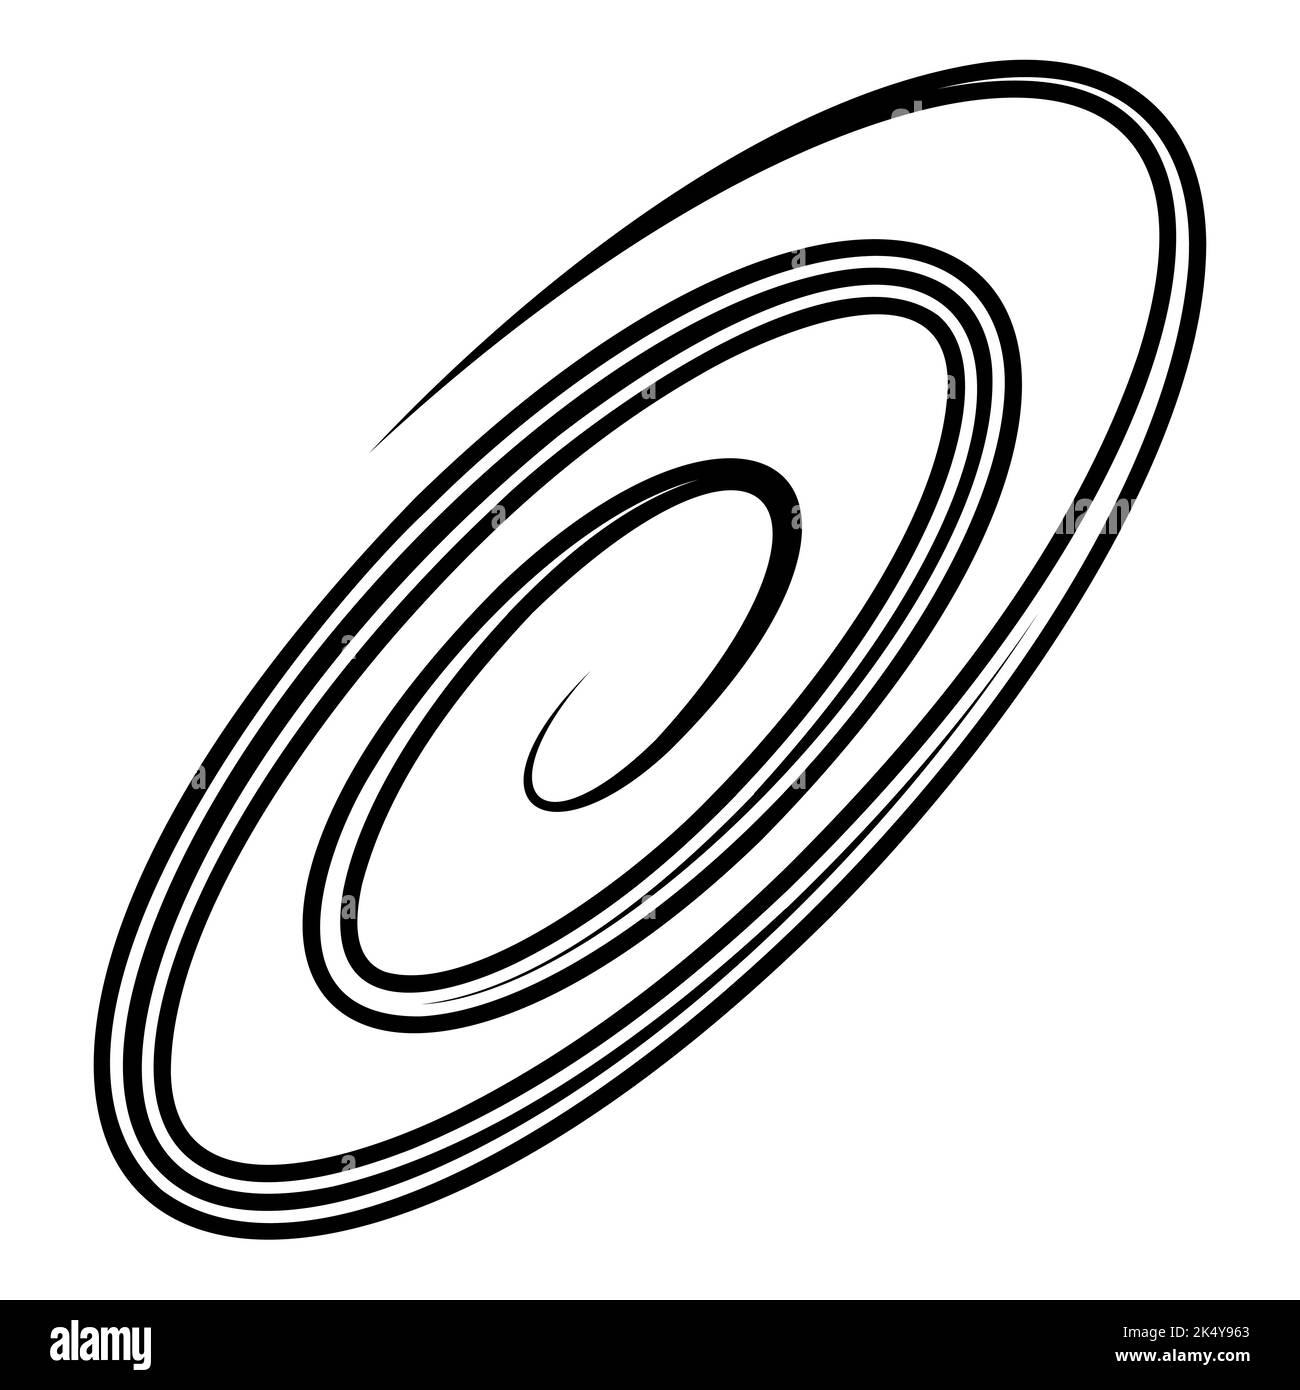 Galaxia espiral ovalada, logotipo de información de tecnología de base de datos, remolino Ilustración del Vector